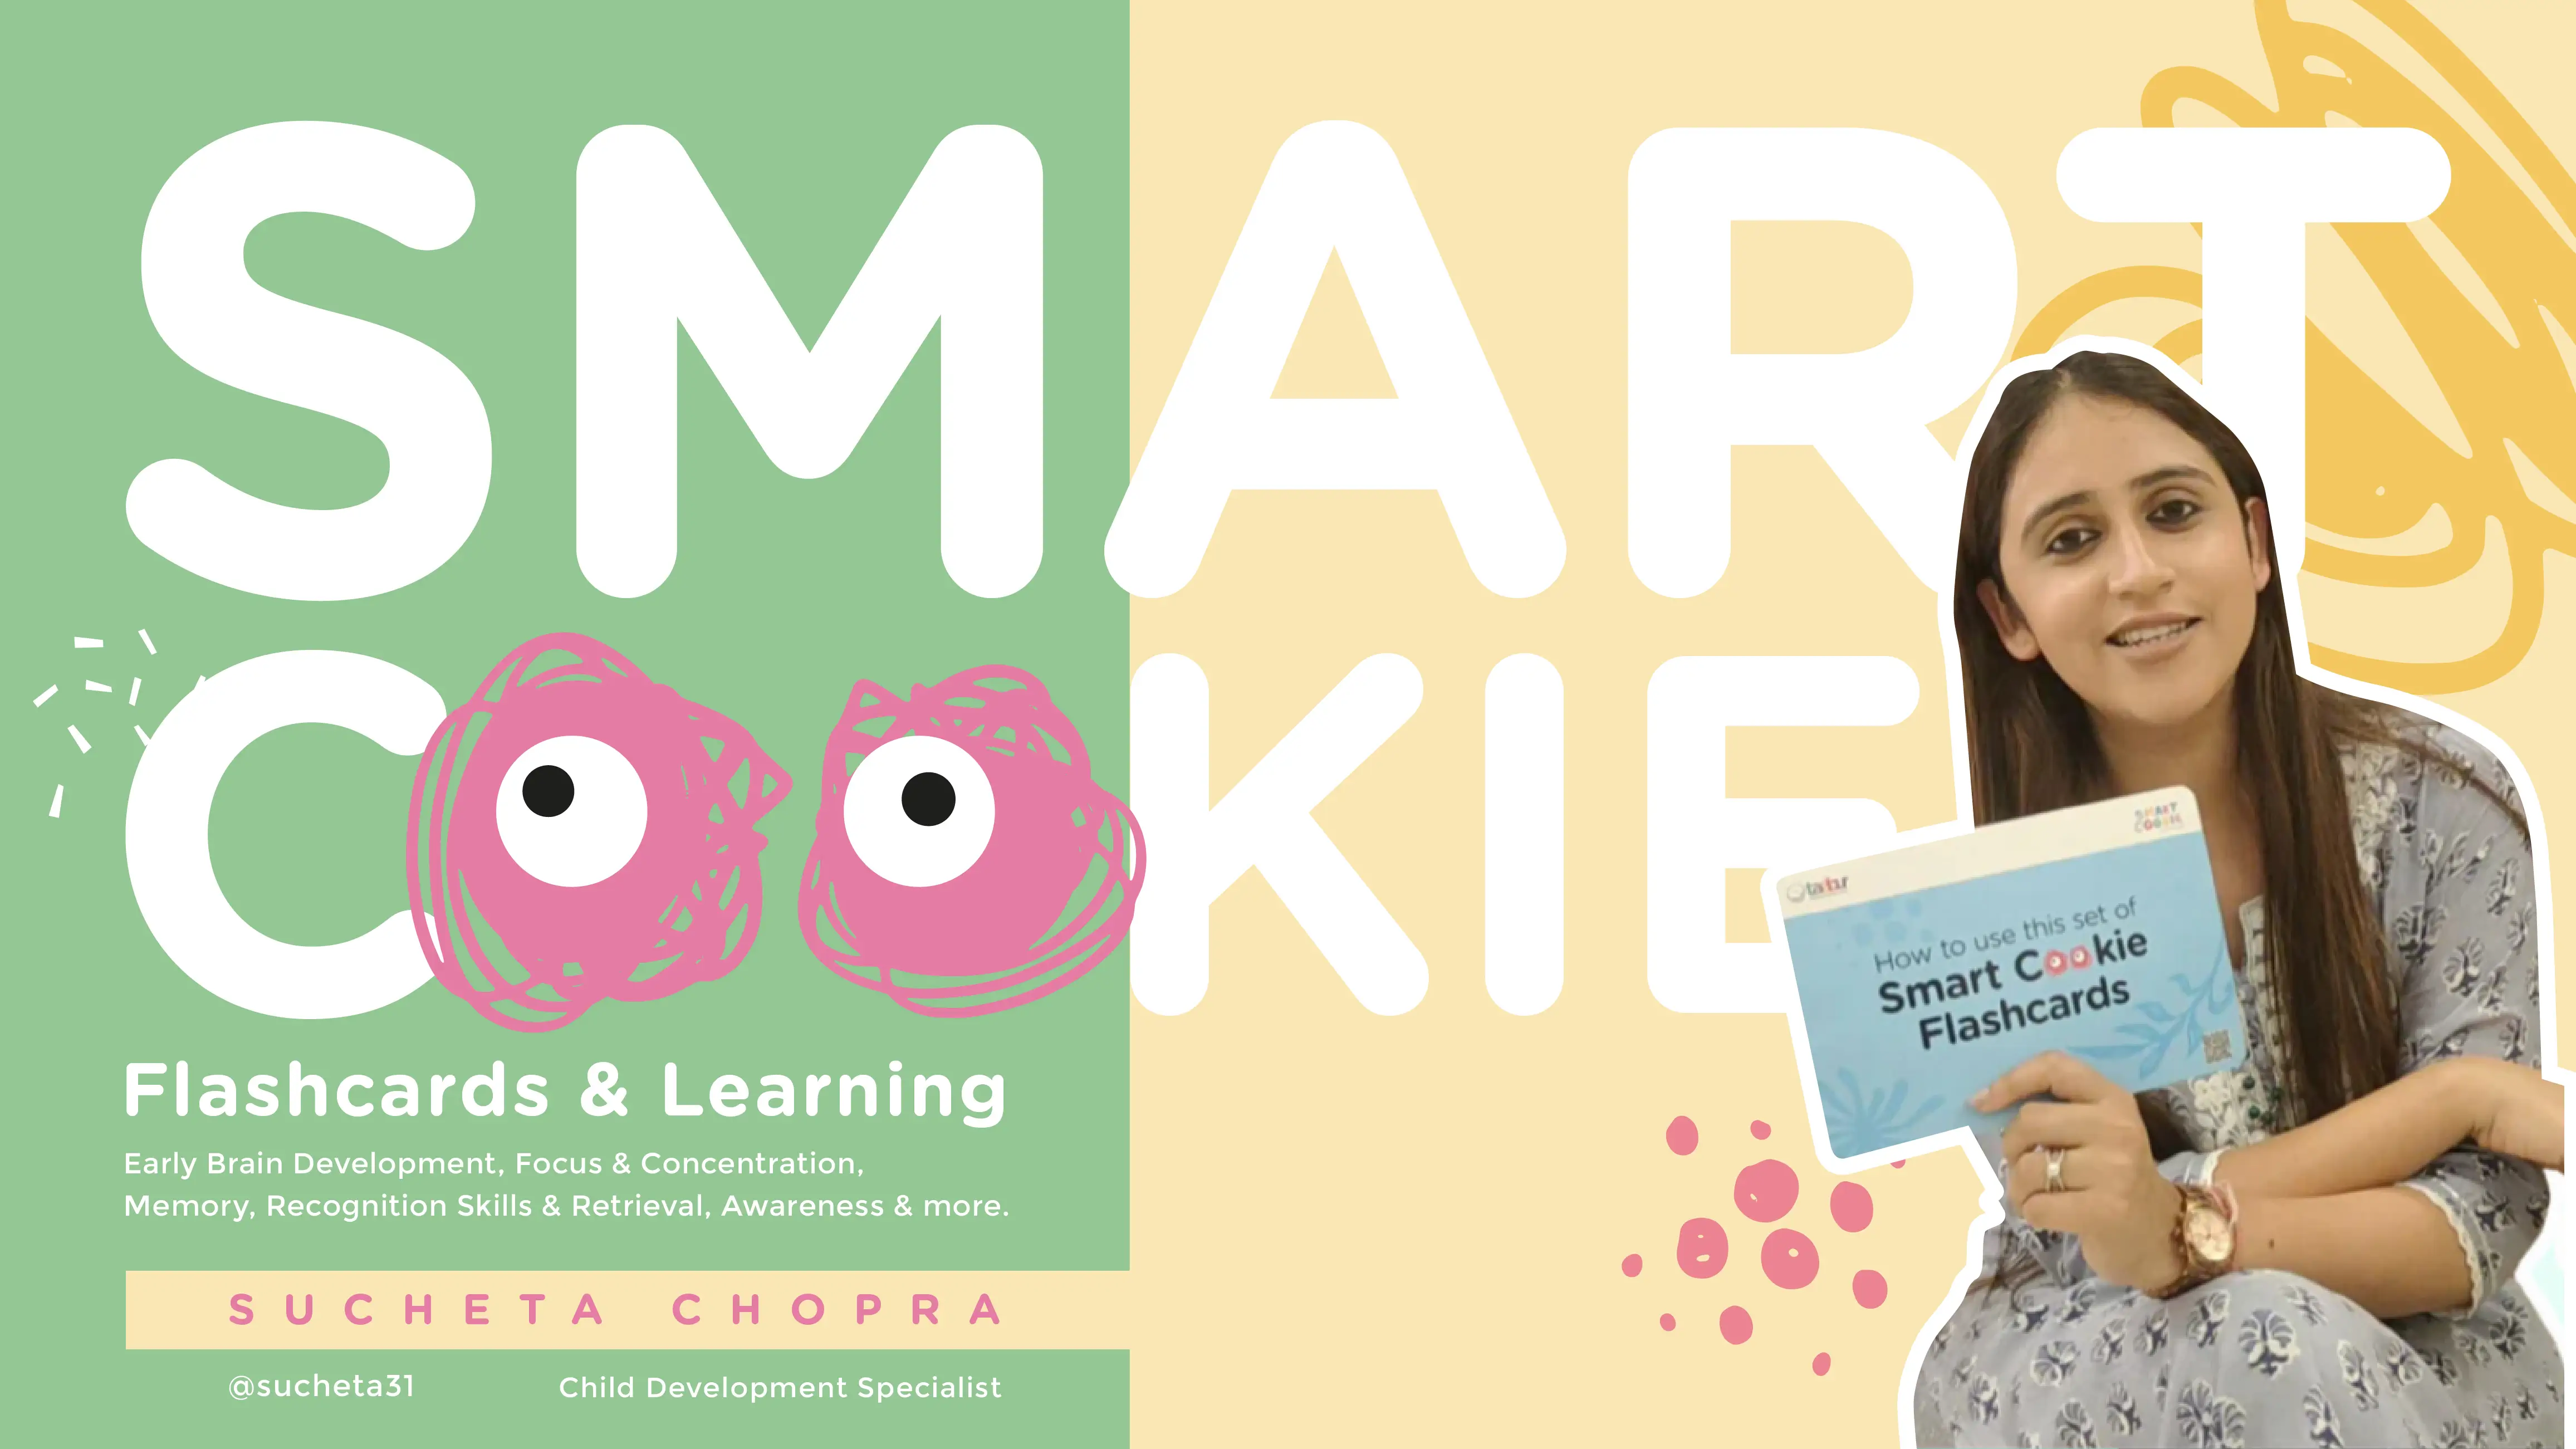 Smart Cookie Flash Cards - Sucheta Chopra.